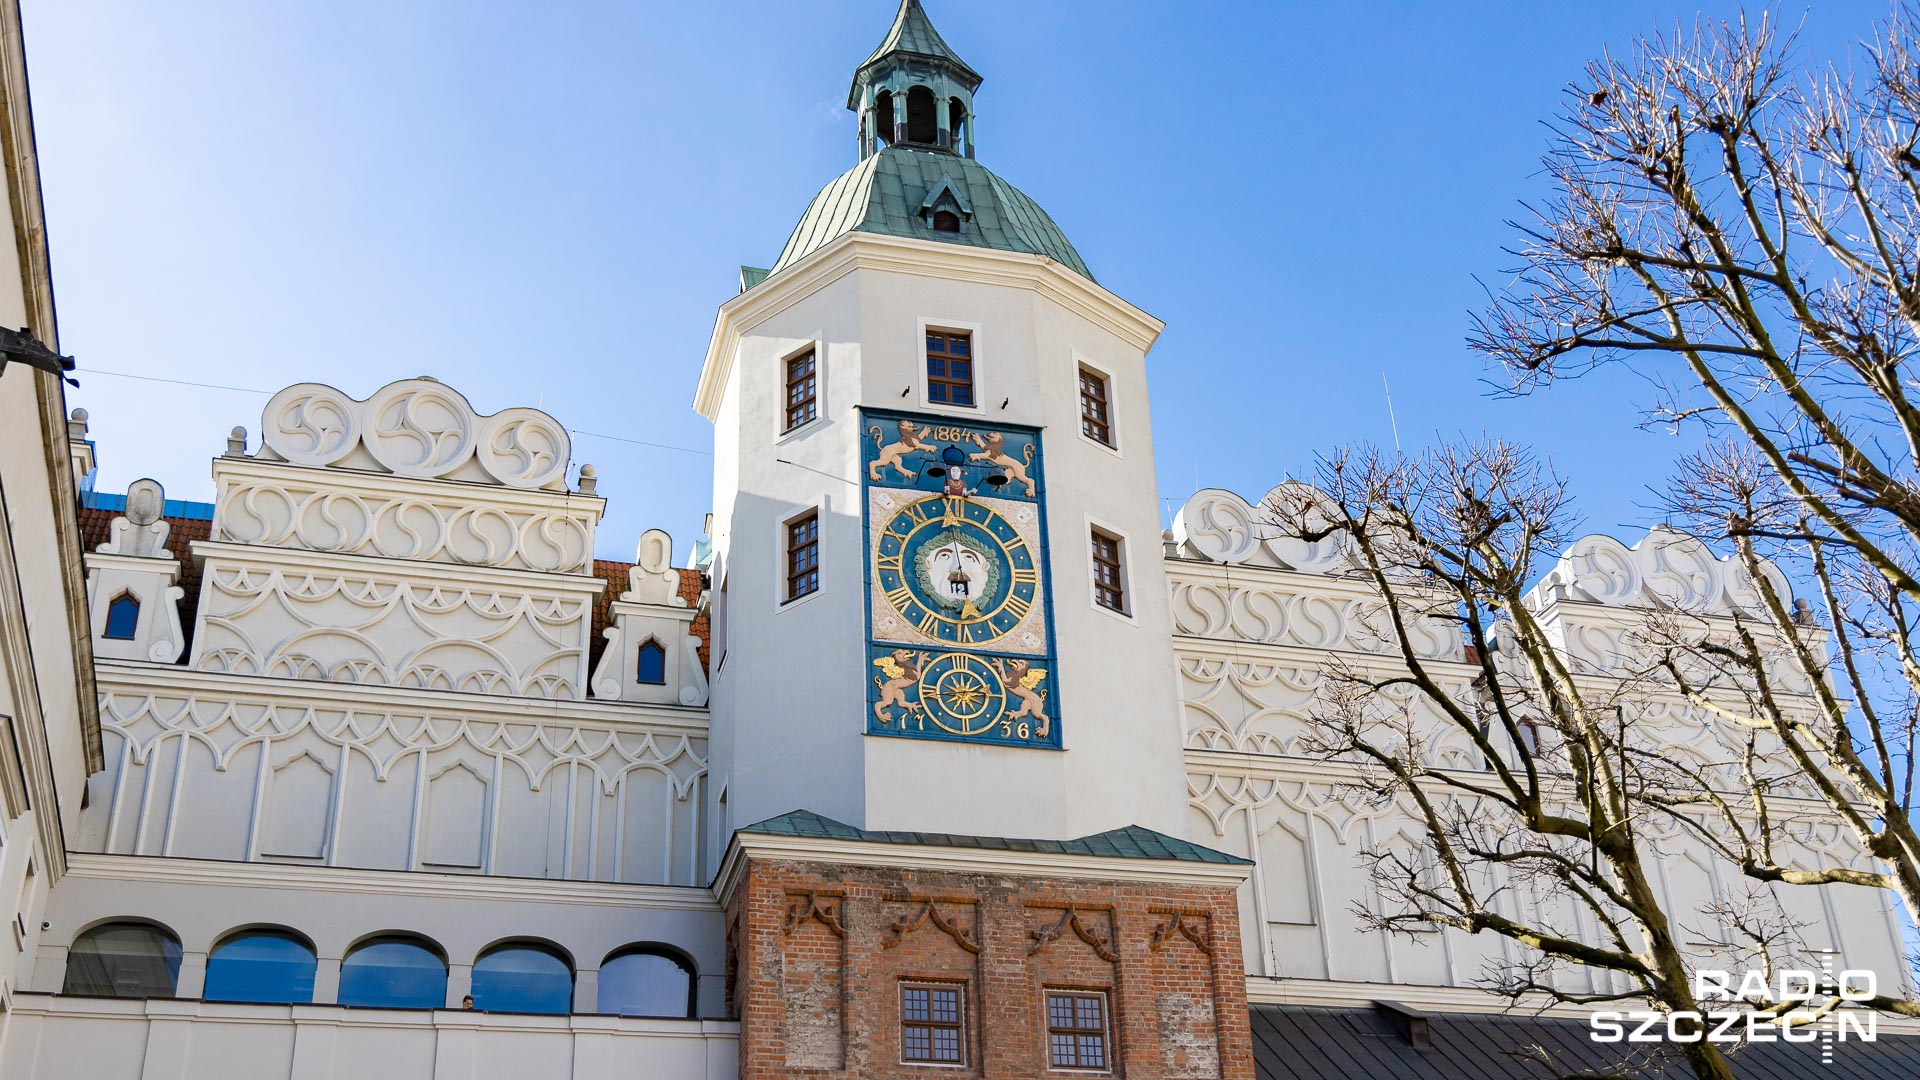 Zamek Książąt Pomorskich w Szczecinie włącza się w obchody 16. Europejskiej Nocy Muzeów.